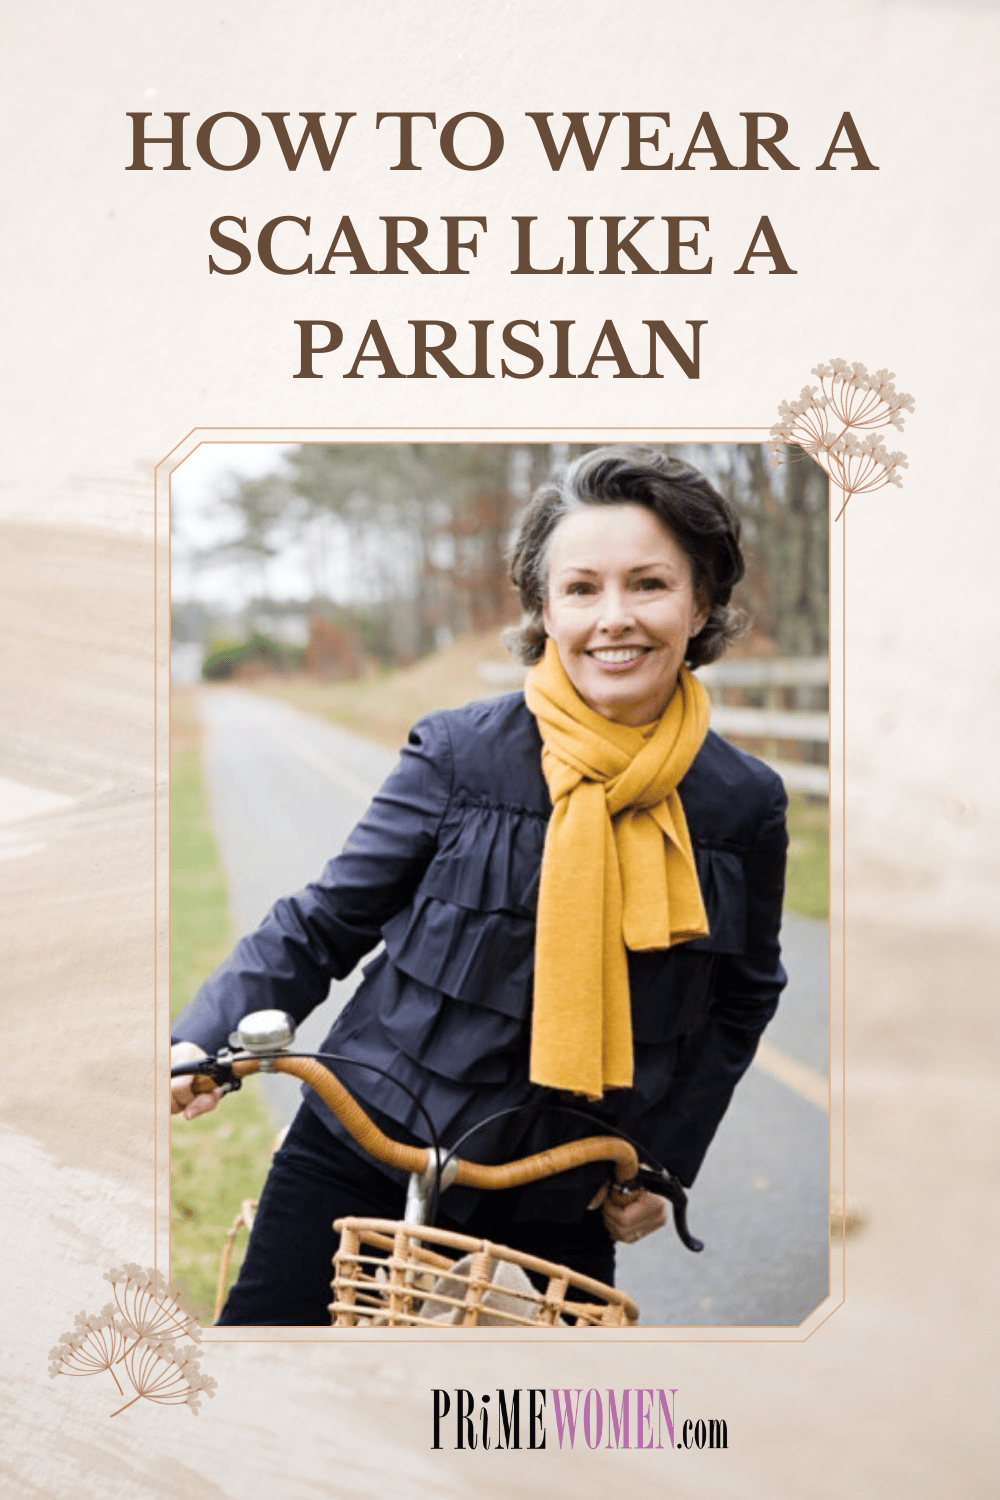 How to wear a scarf like a parisian